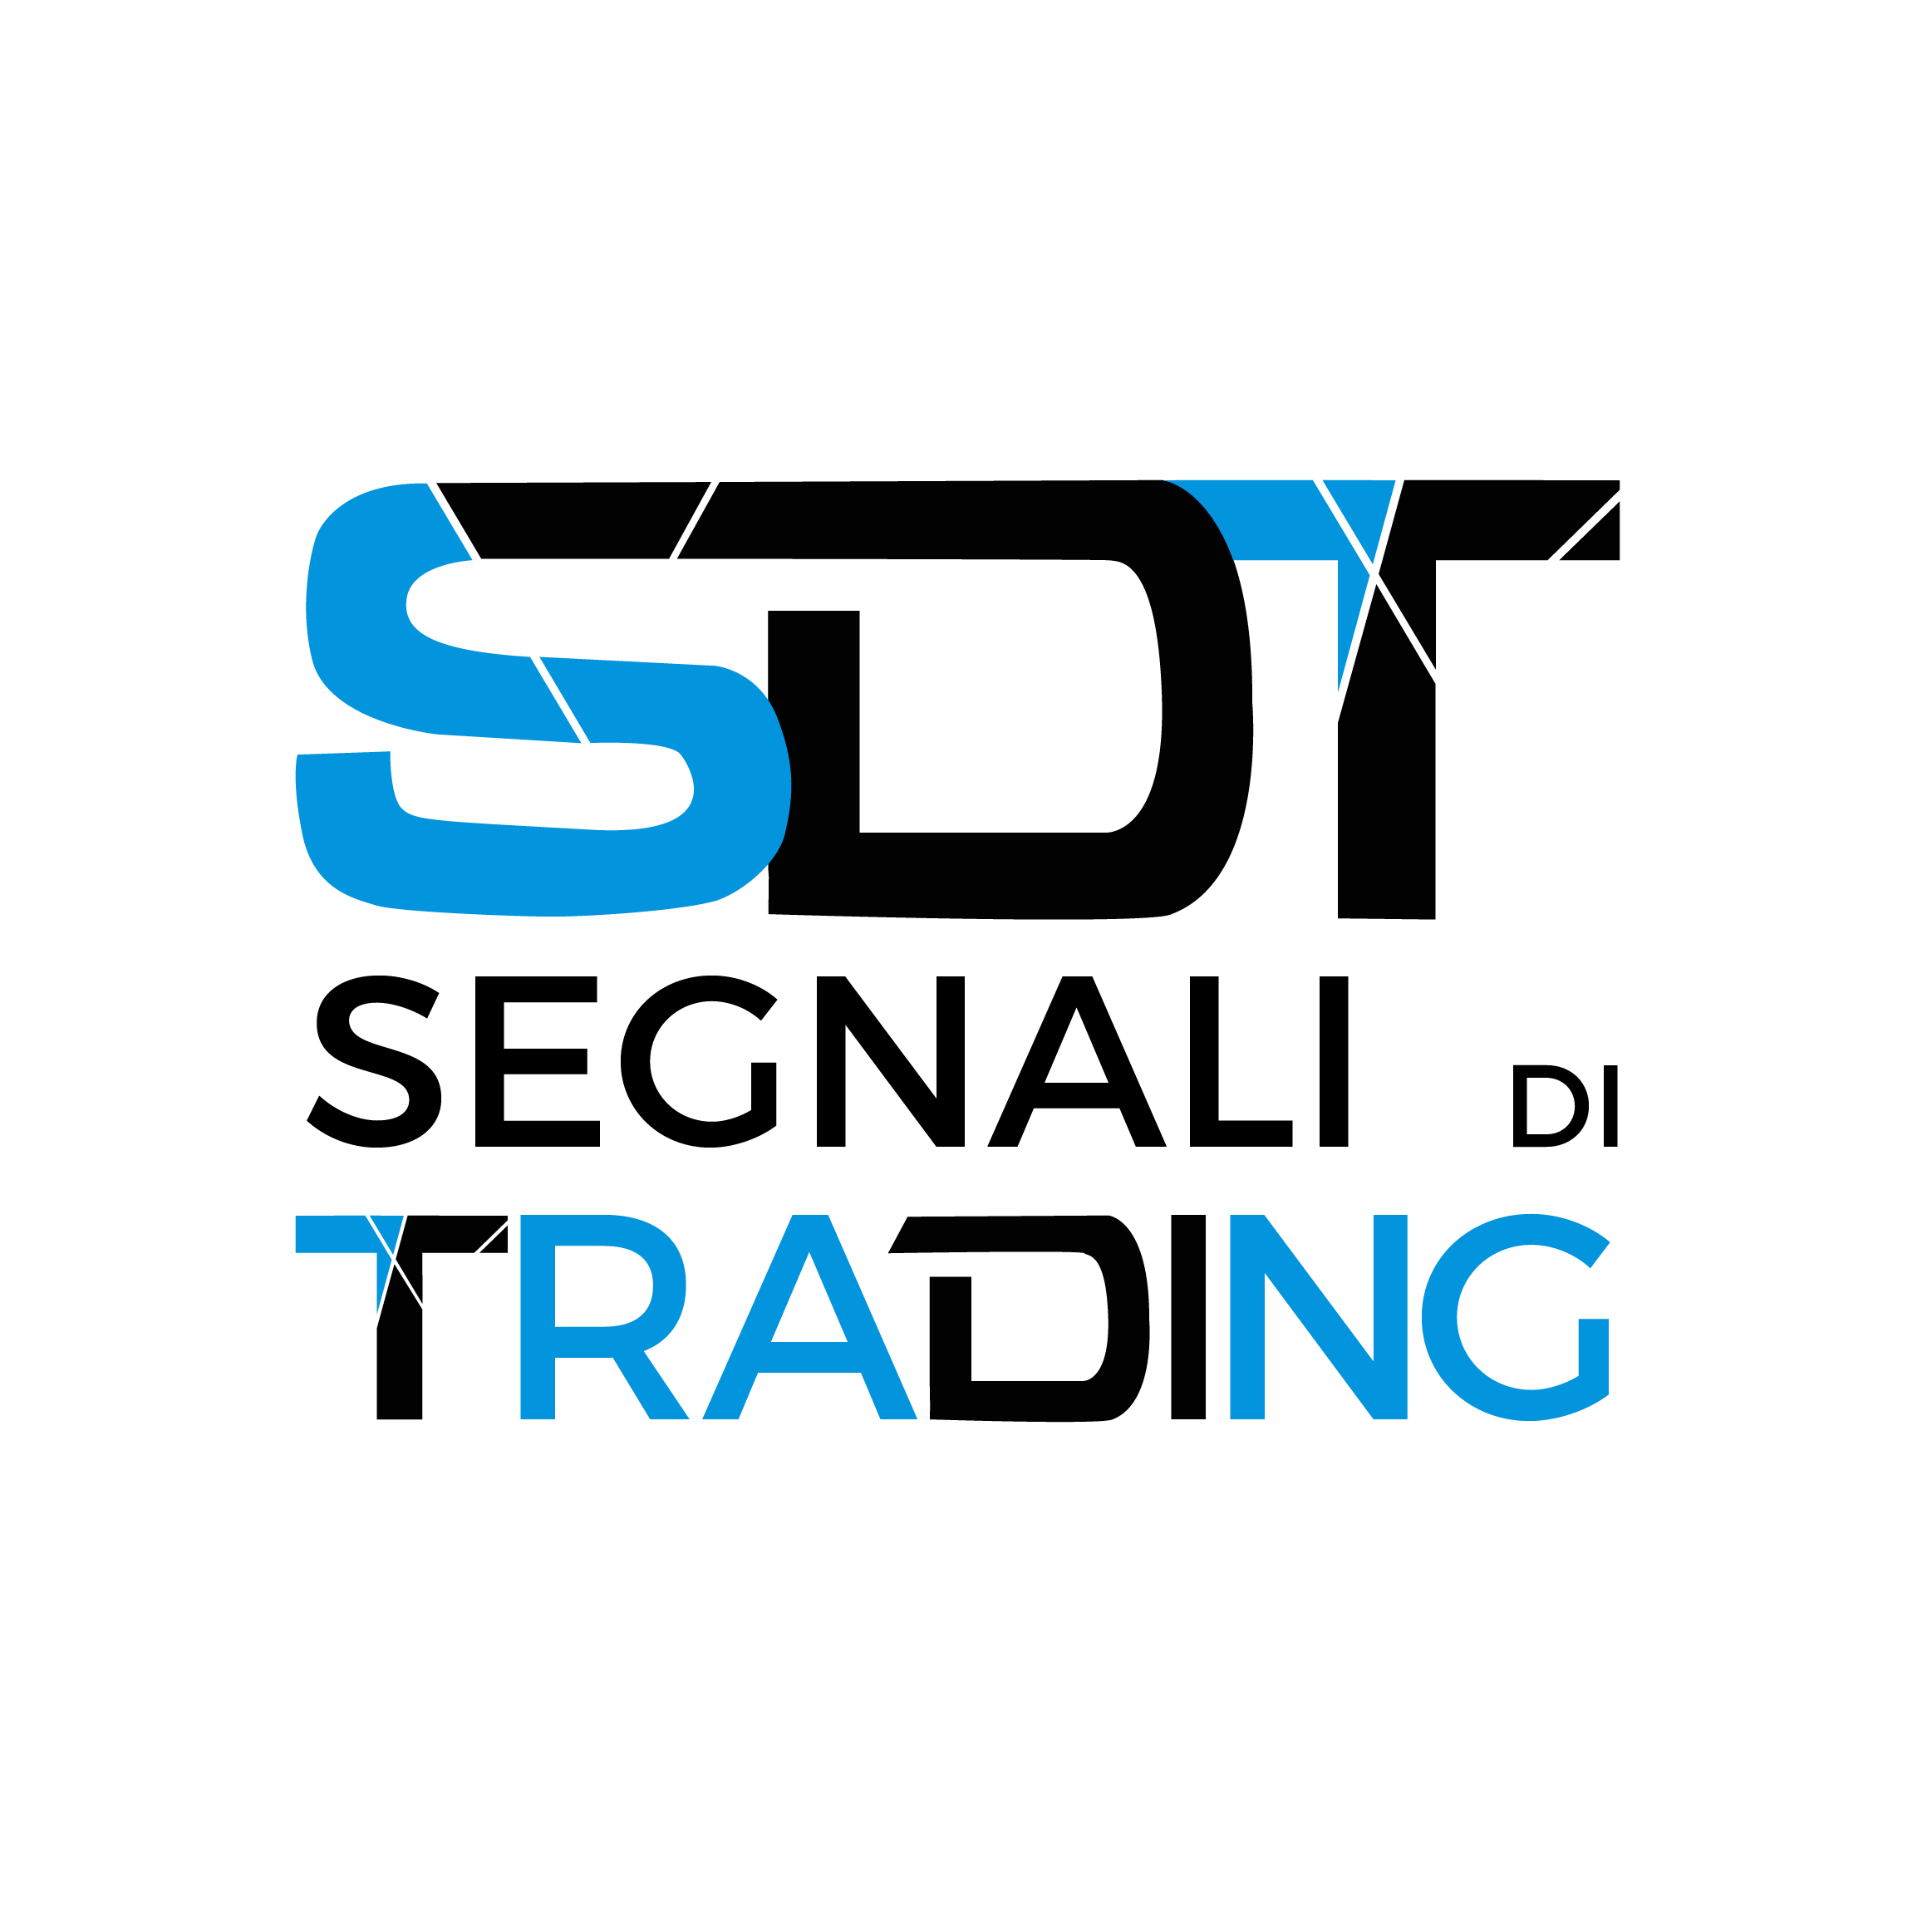 logo sdt trading